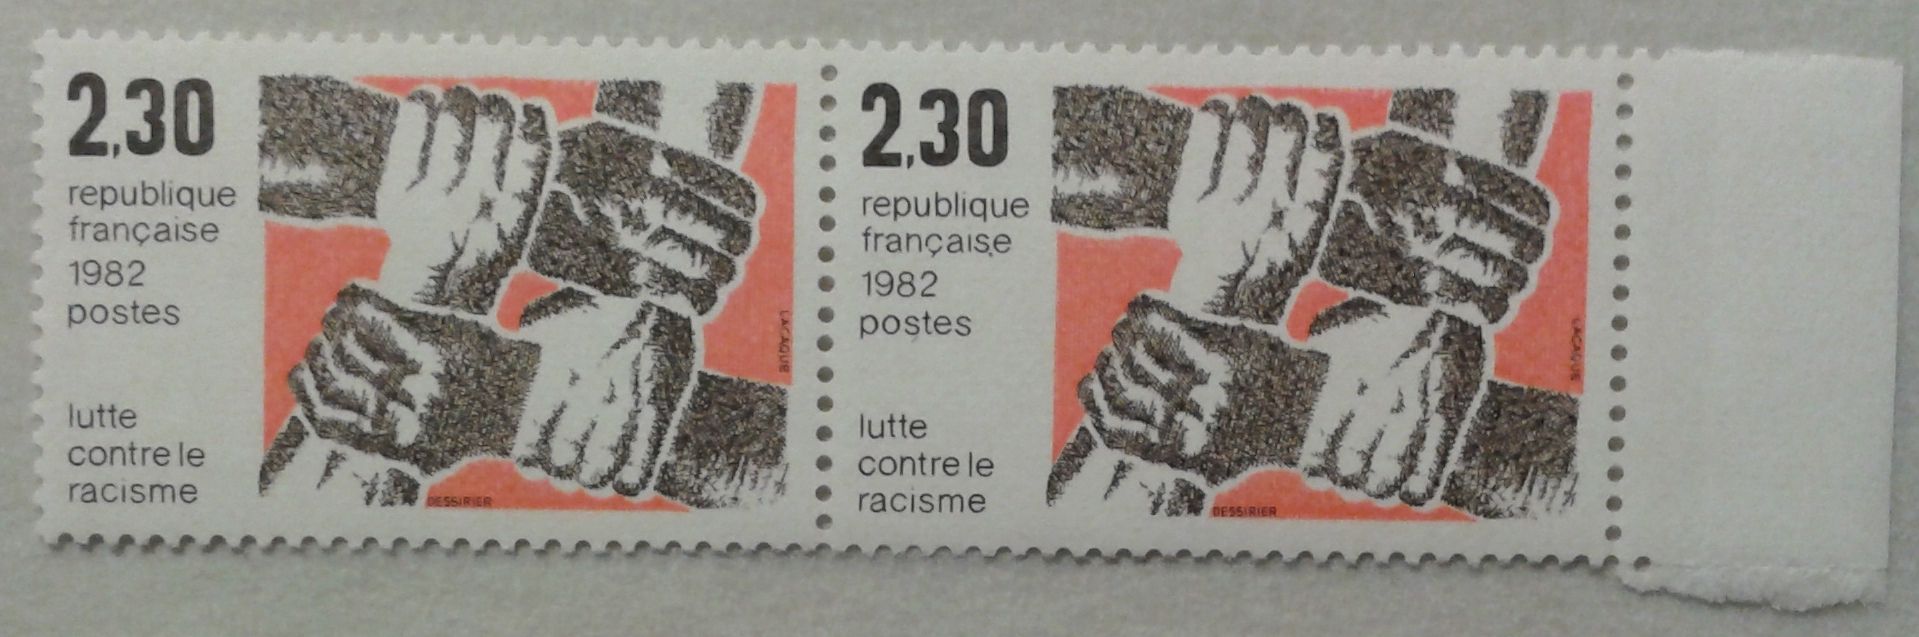 Bloc de 2 Timbres Paire Bord de Feuille France 1982 Yvert et Tellier n°2204 Lutte contre le racisme Neuf** Gomme Intacte